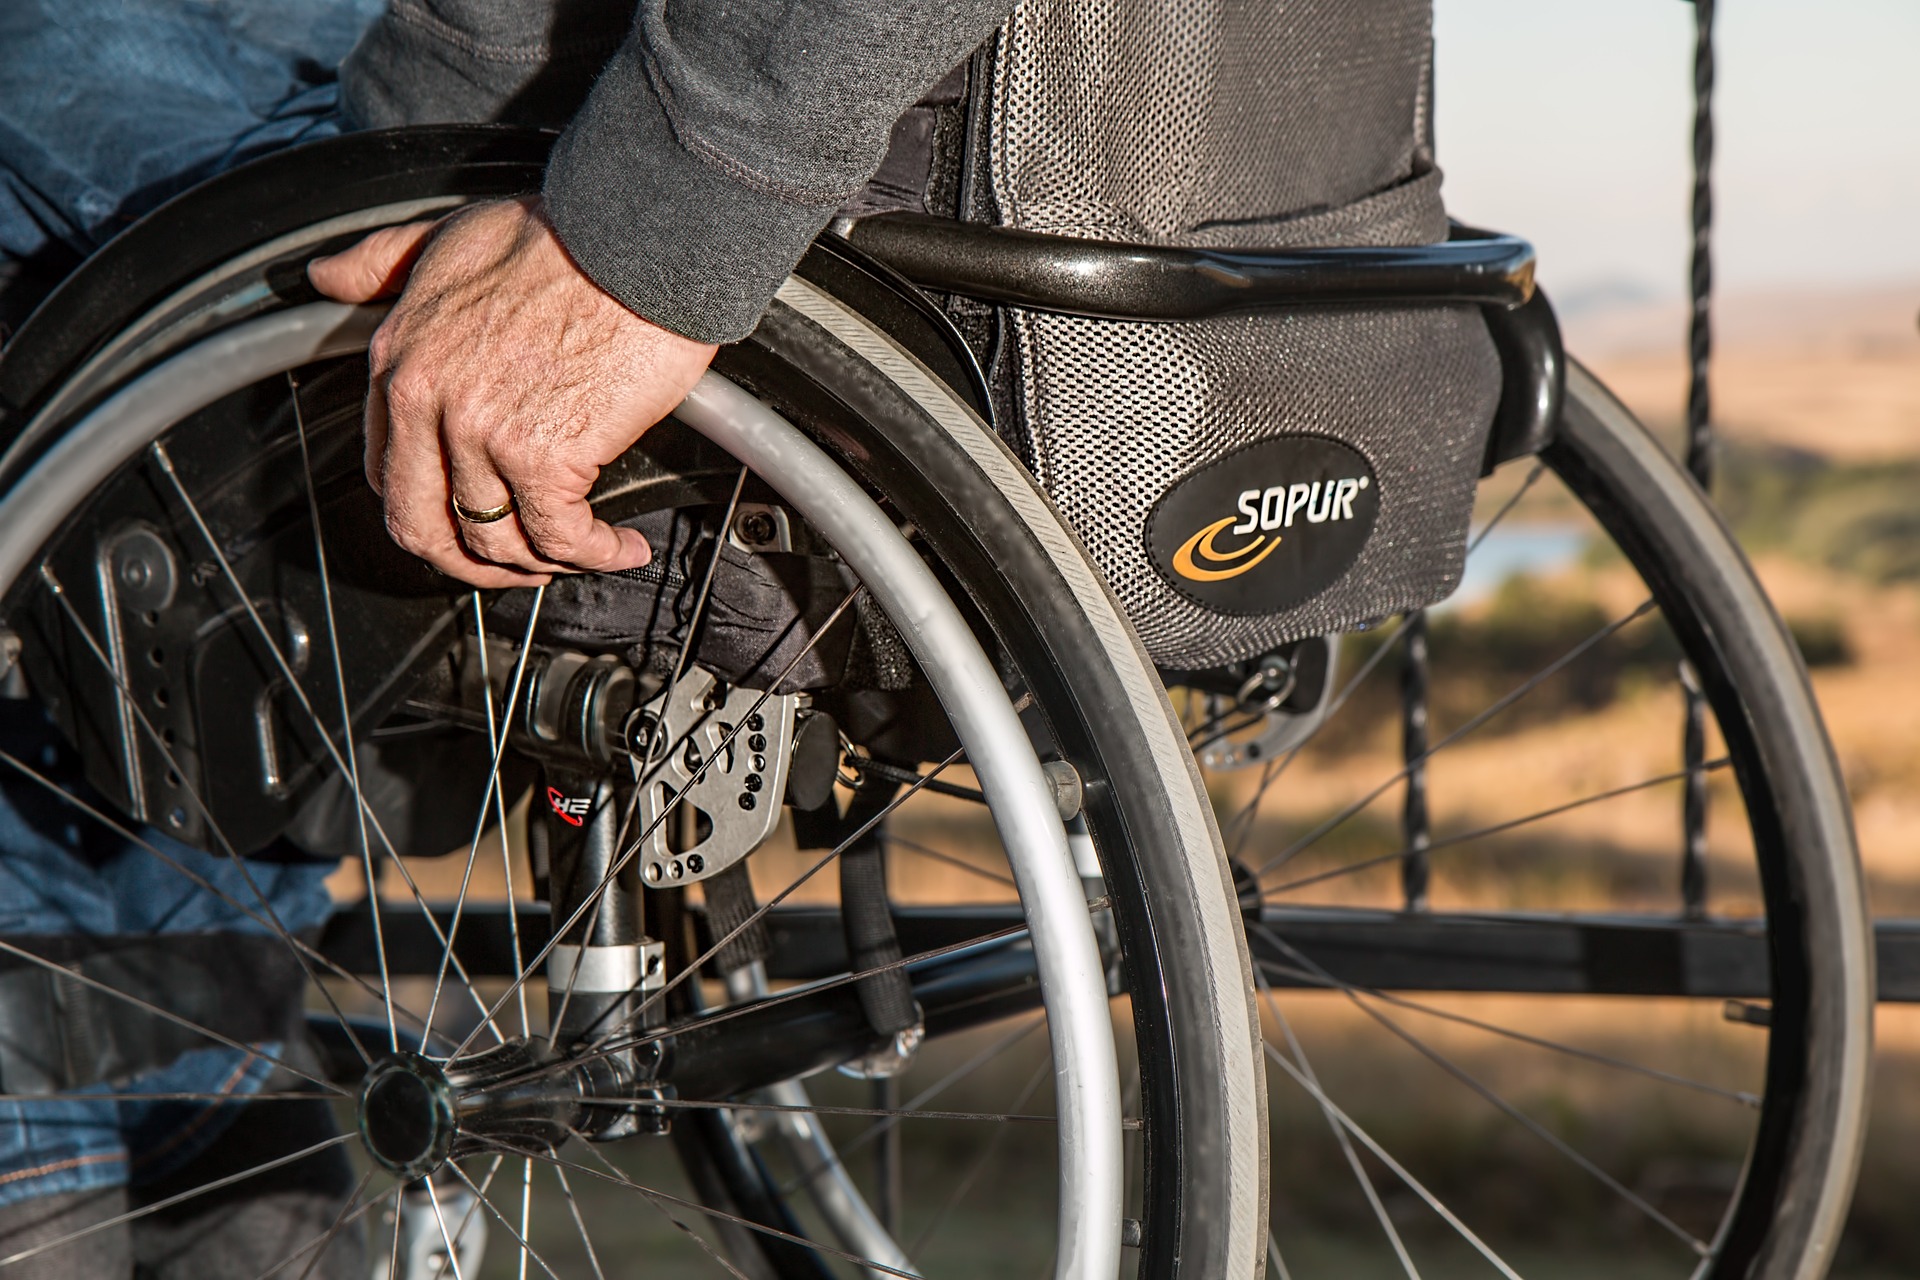 Mobilność dla osób niepełnosprawnych – elektryczne skutery inwalidzkie jako rozwiązanie problemów z poruszaniem